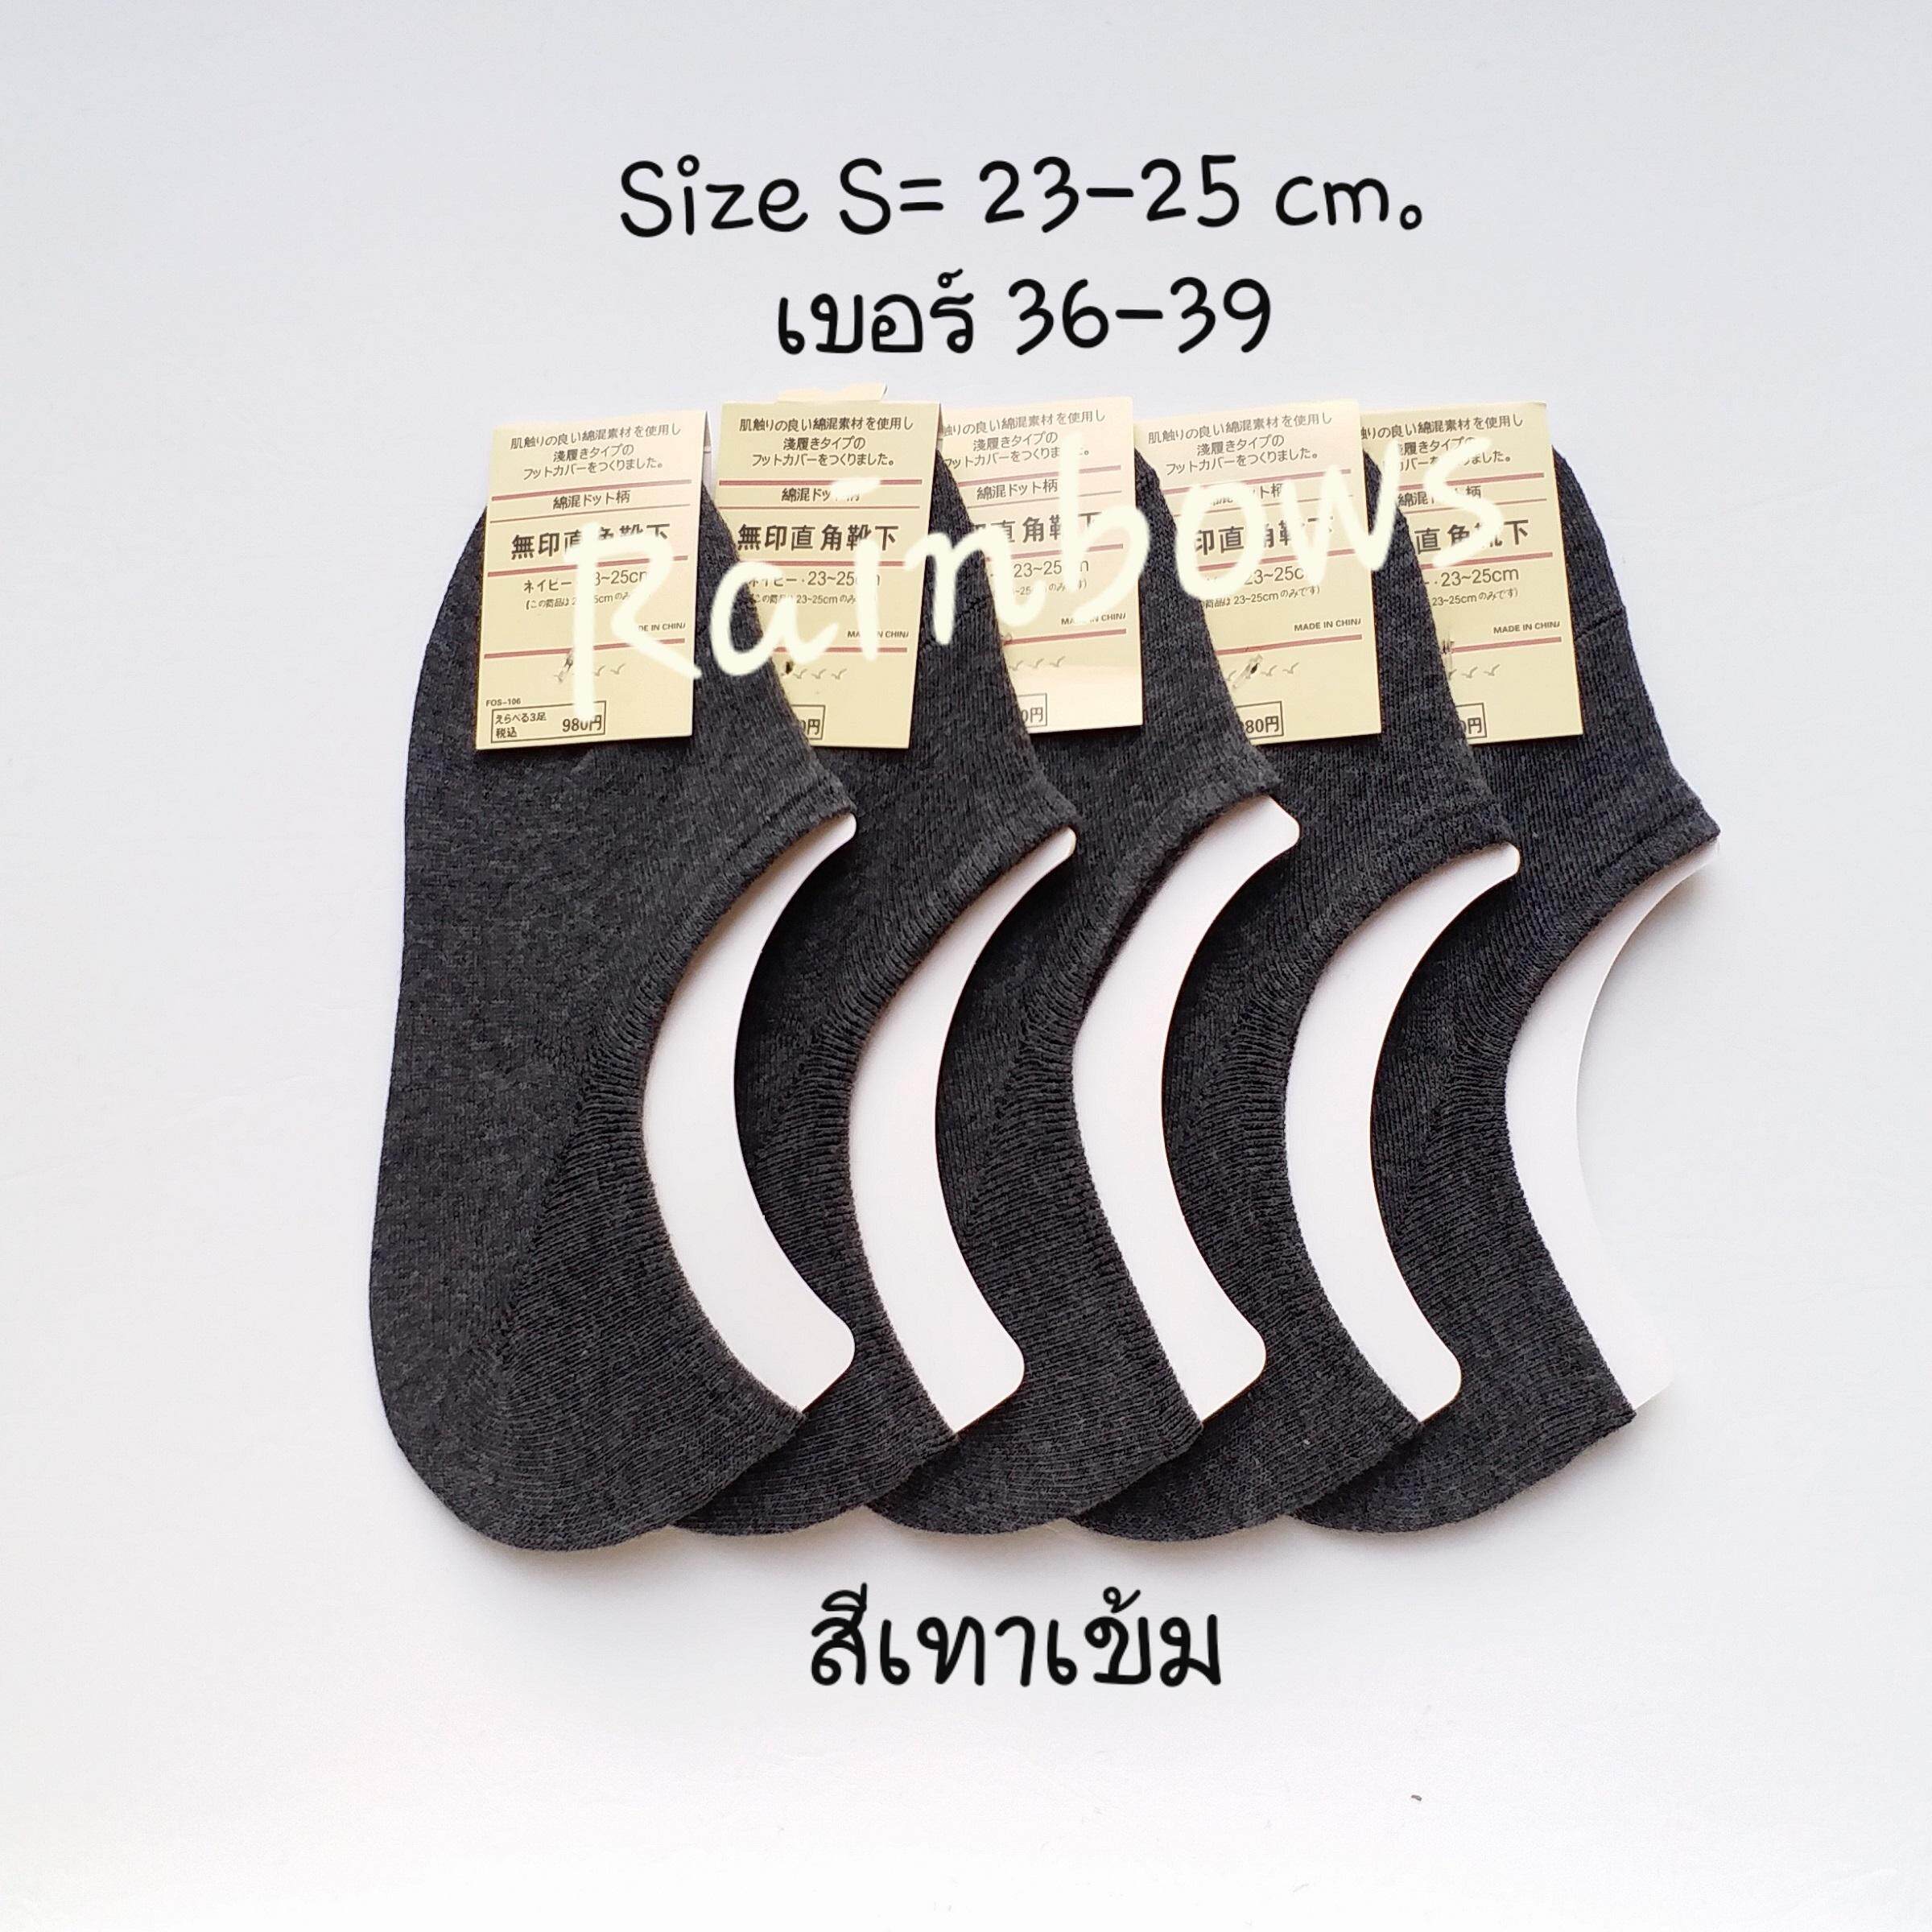 5 คู่ ถุงเท้าข้อเว้า ซ่อนข้อ #สไตล์ญี่ปุ่น #มีซิลิโคนกันหลุด  #Size S (เบอร์ 36 - 39)